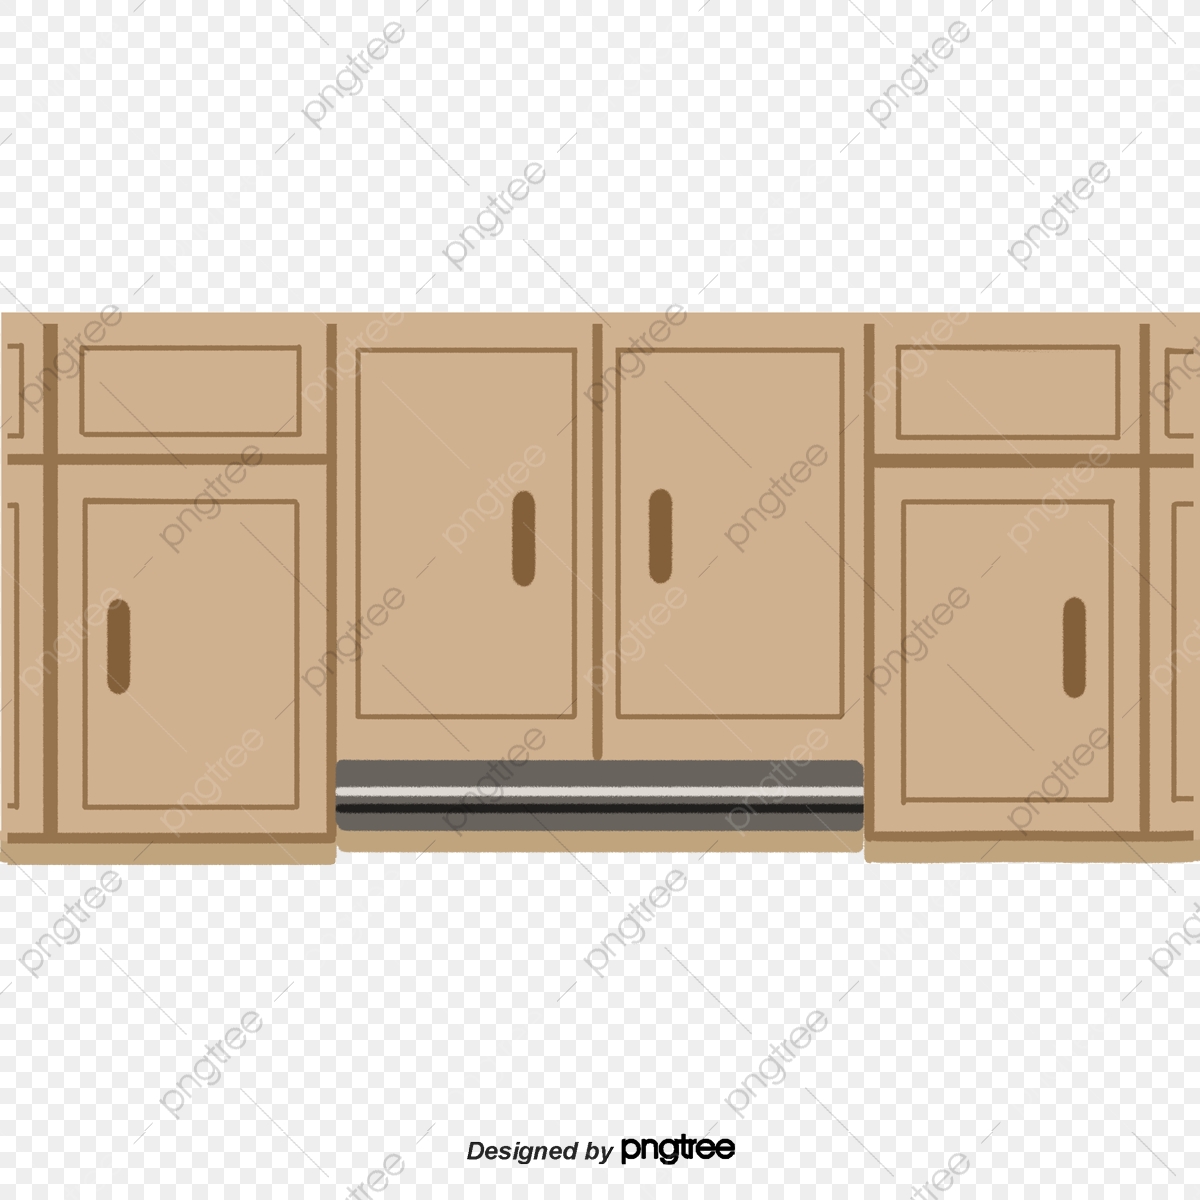 clipart kitchen kitchen cupboard